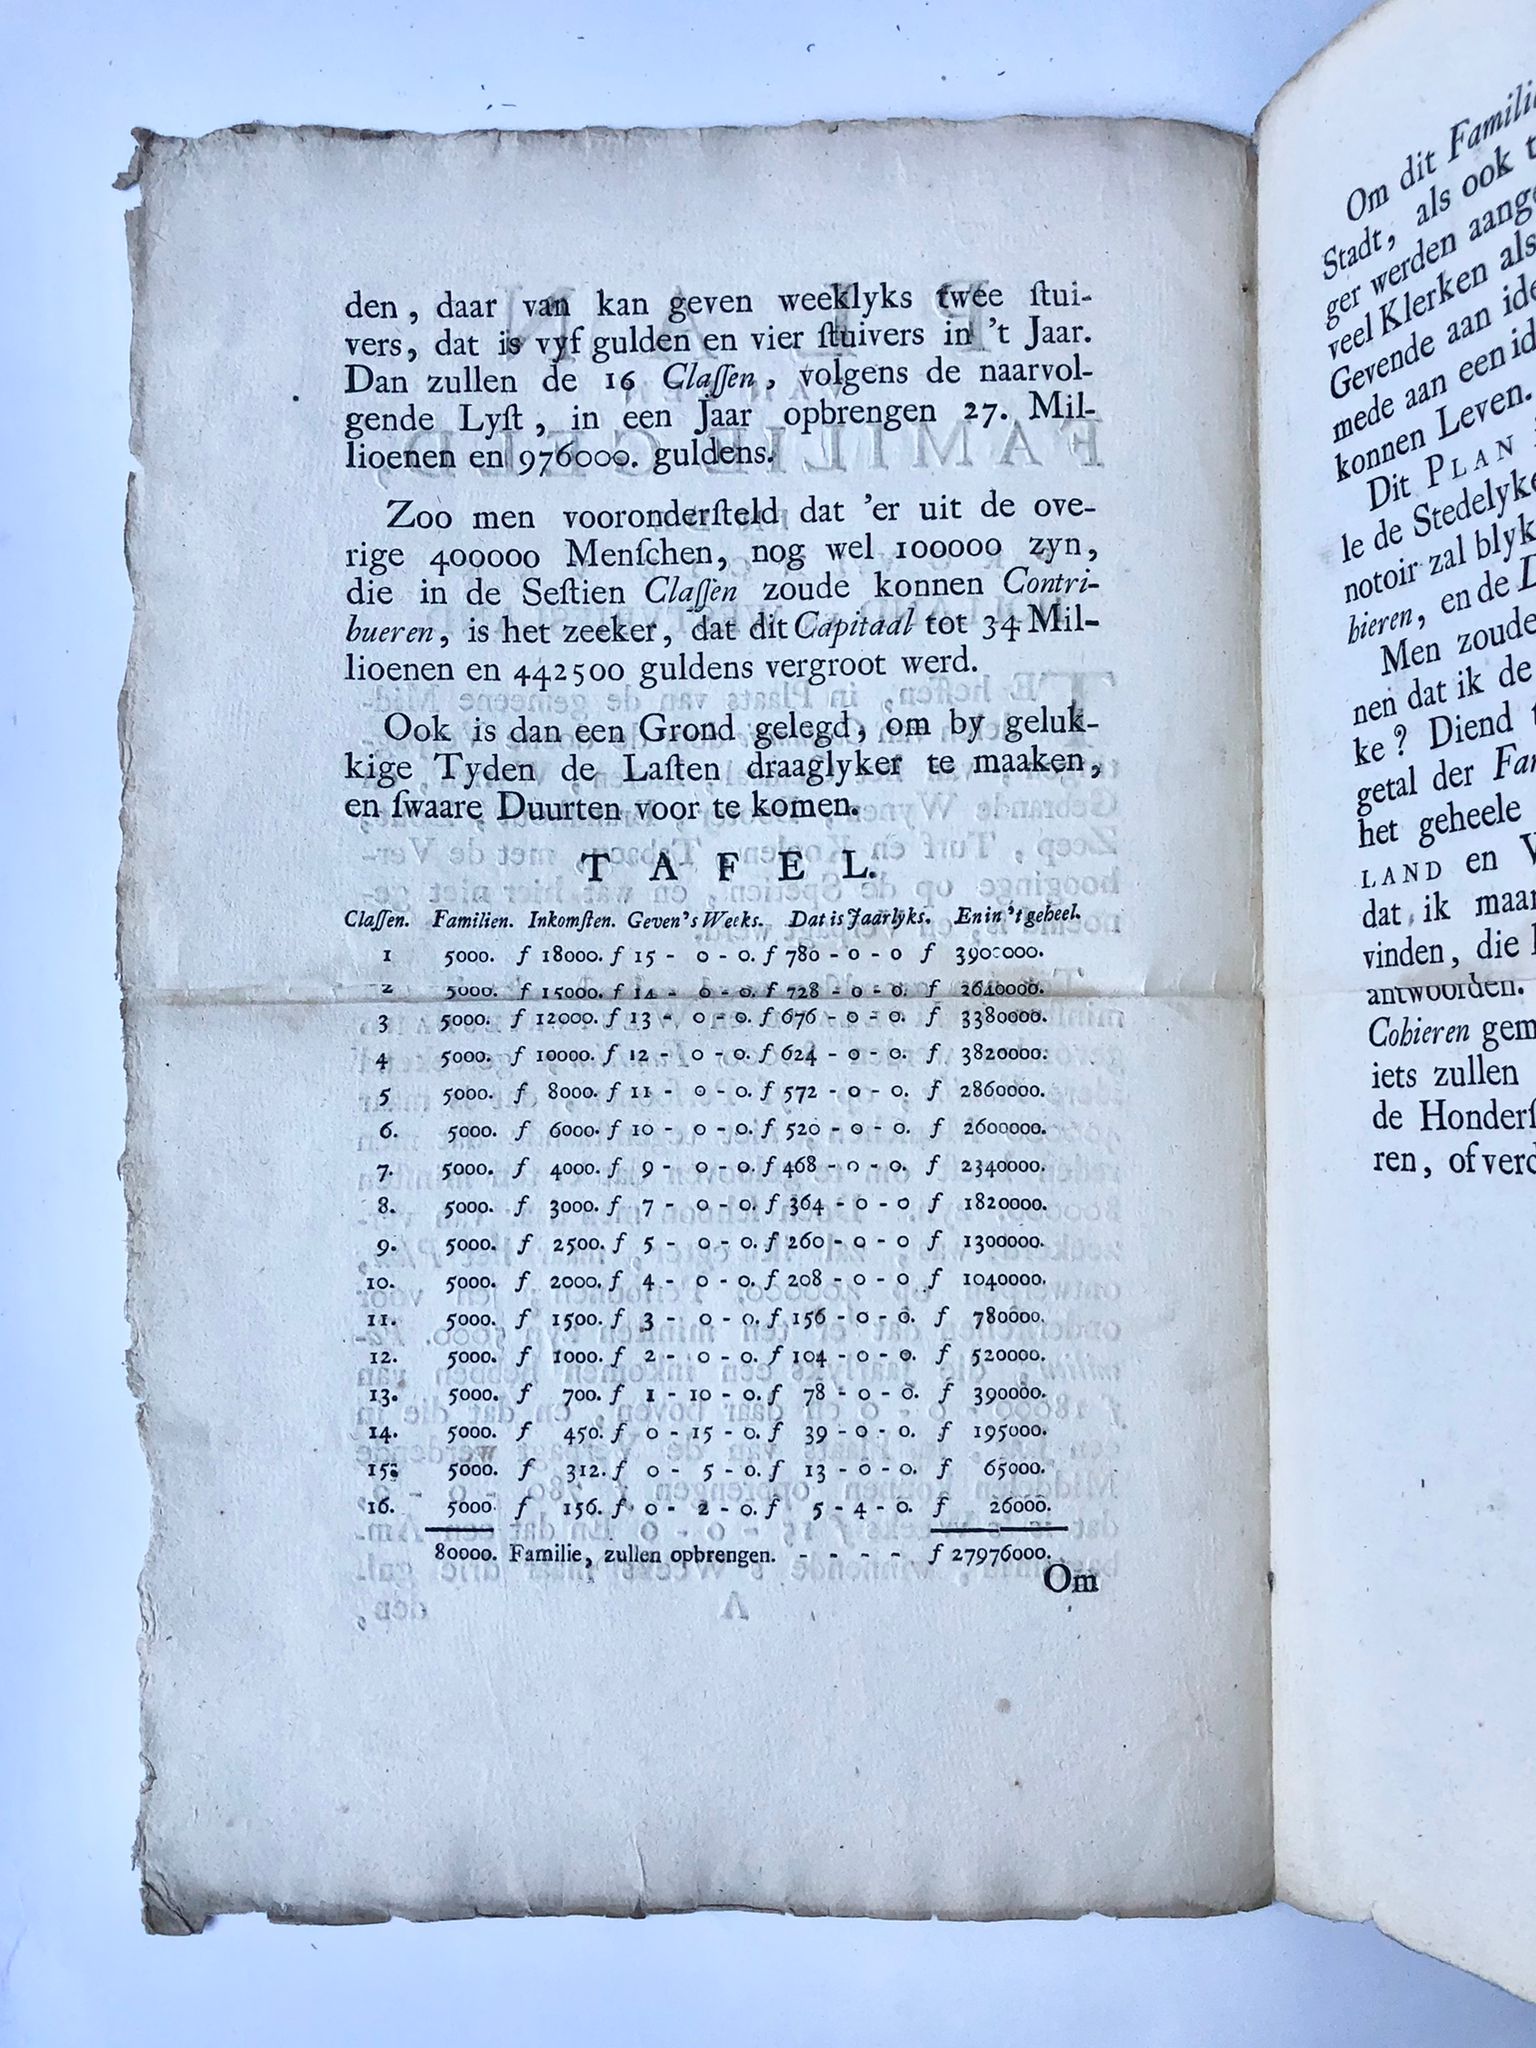 [Printed publication, familiegeld, 1748] Plan van een Familie Geld, in de provincie van Holland en Westvriesland. D. Langeweg. ’s Hage den 27 Juny 1748, 3 pp.